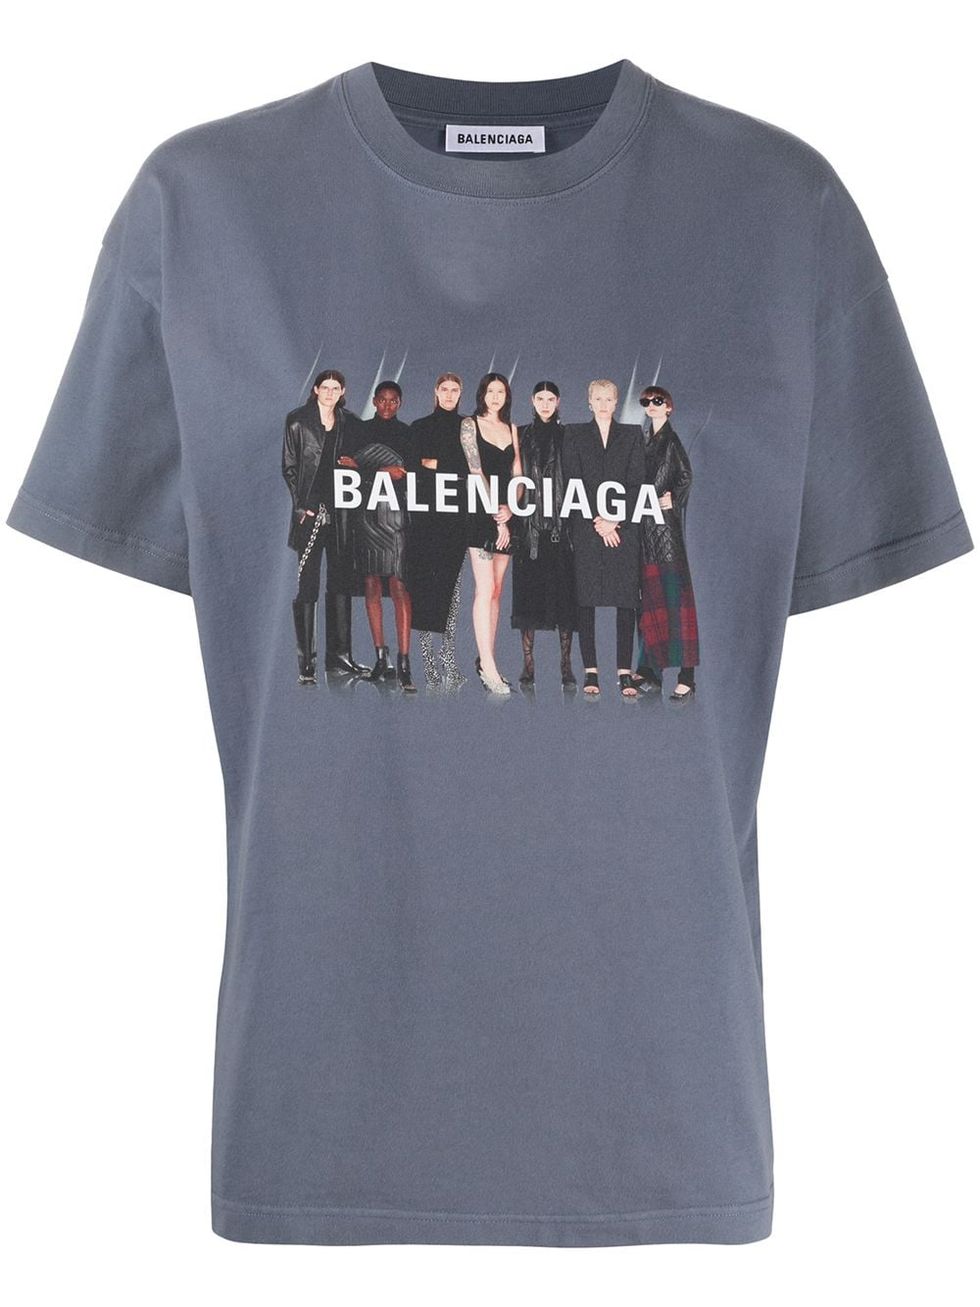 Balenciaga 模特兒圖樣T恤